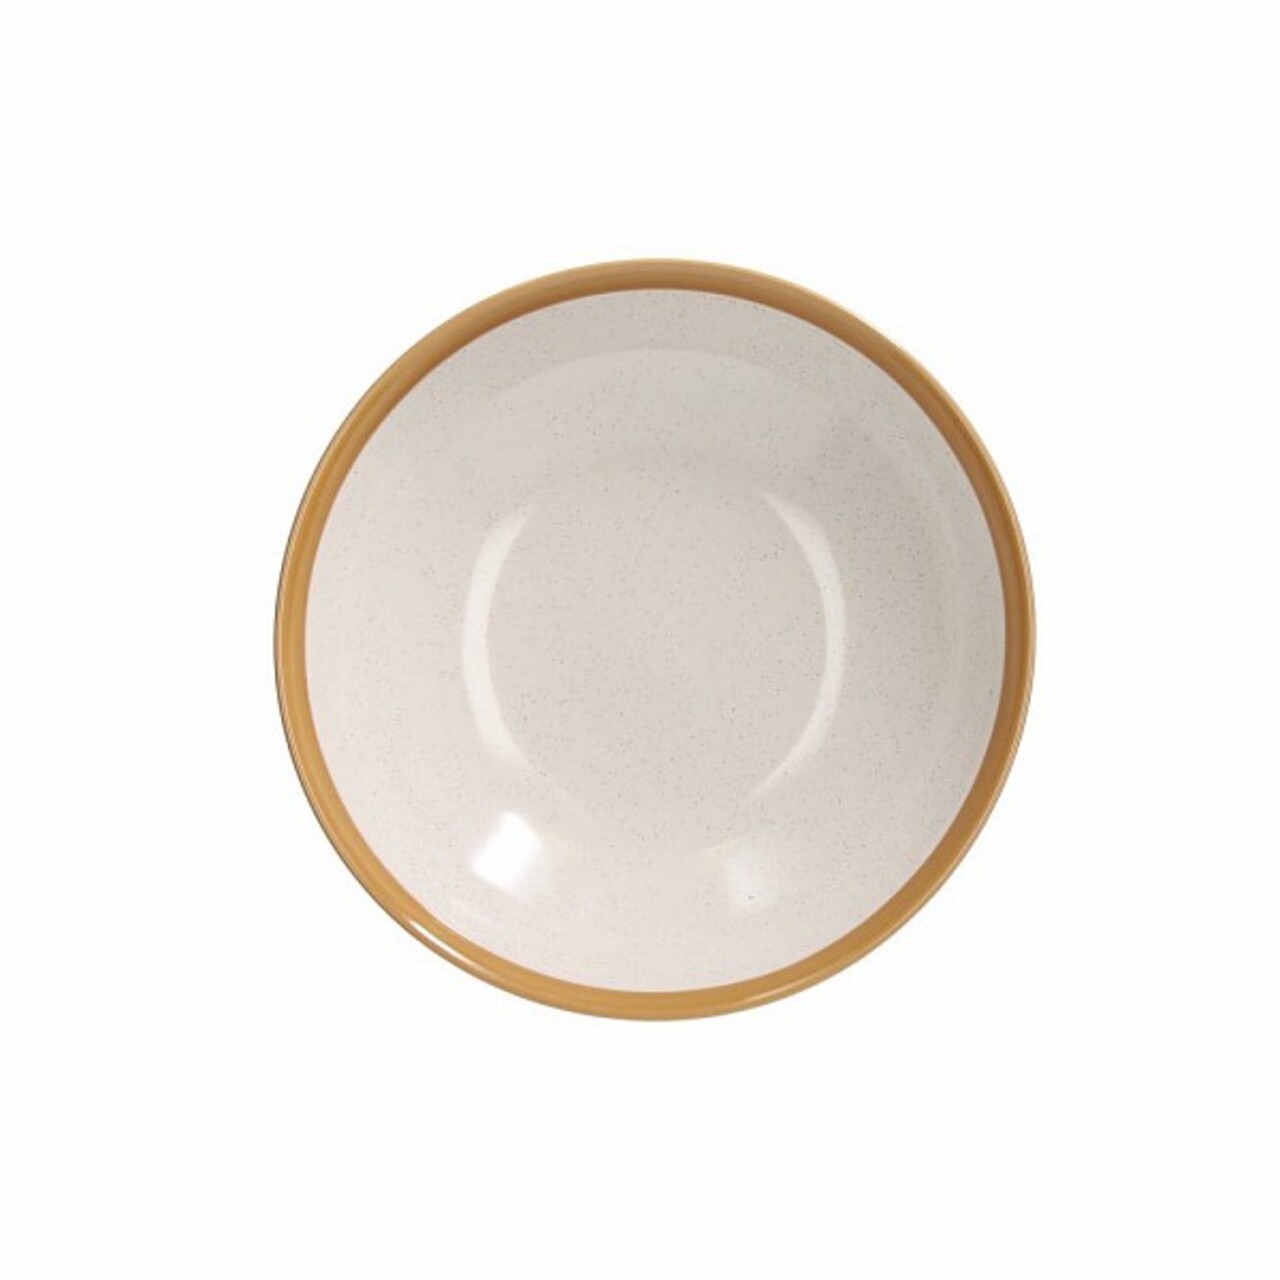 Kiterjedt tányér, Tognana, Louise Woody Beige, 21 cm Ø, kerámia, bézs